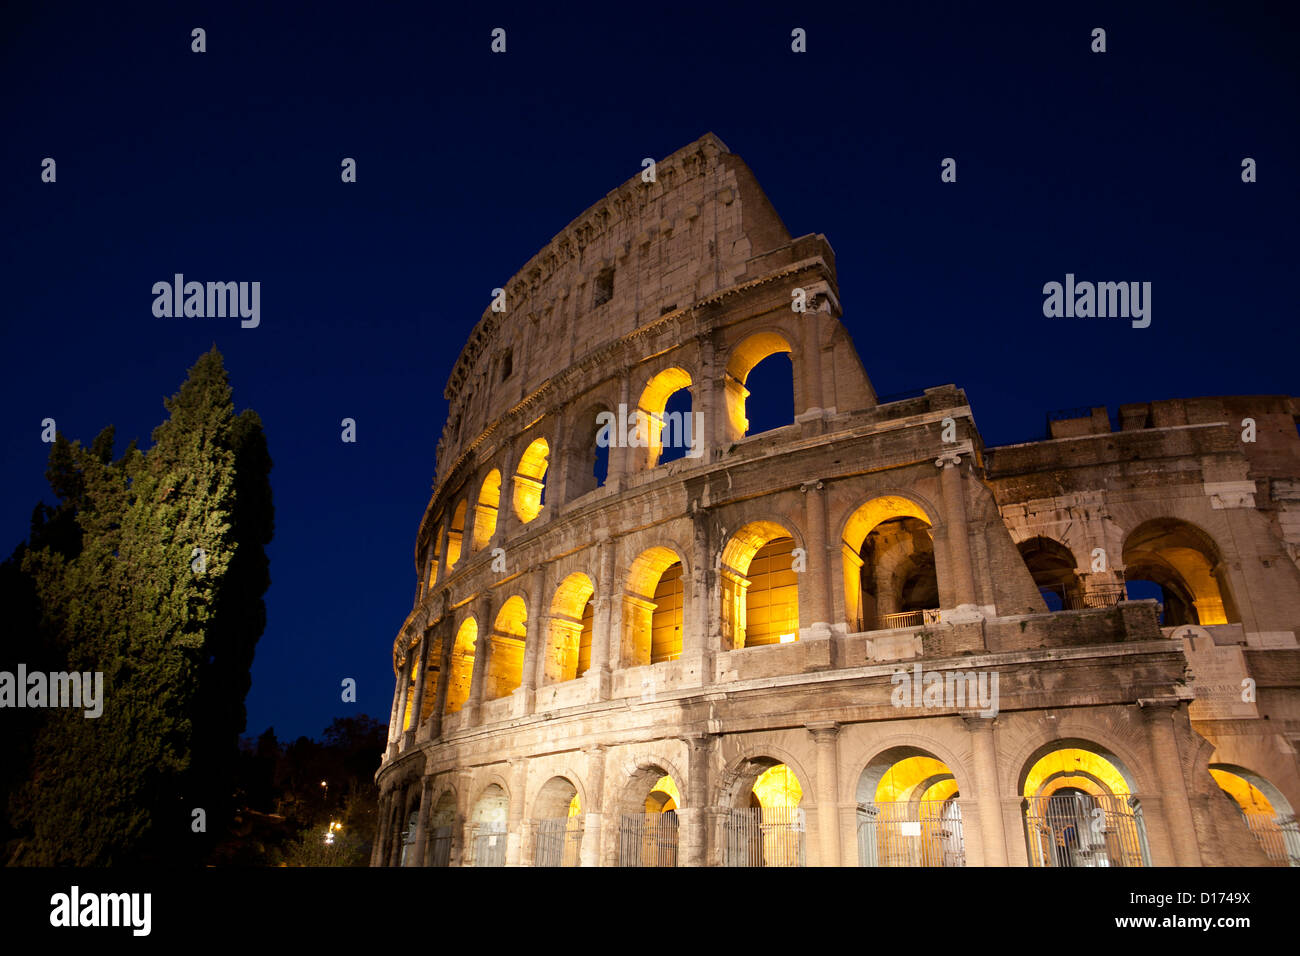 Amphitheatrum, Flavium, Coliseum, colosseum, Roma, Italy, monument, art, night, roman, old, cesar, spectacle, architecture, ruin Stock Photo